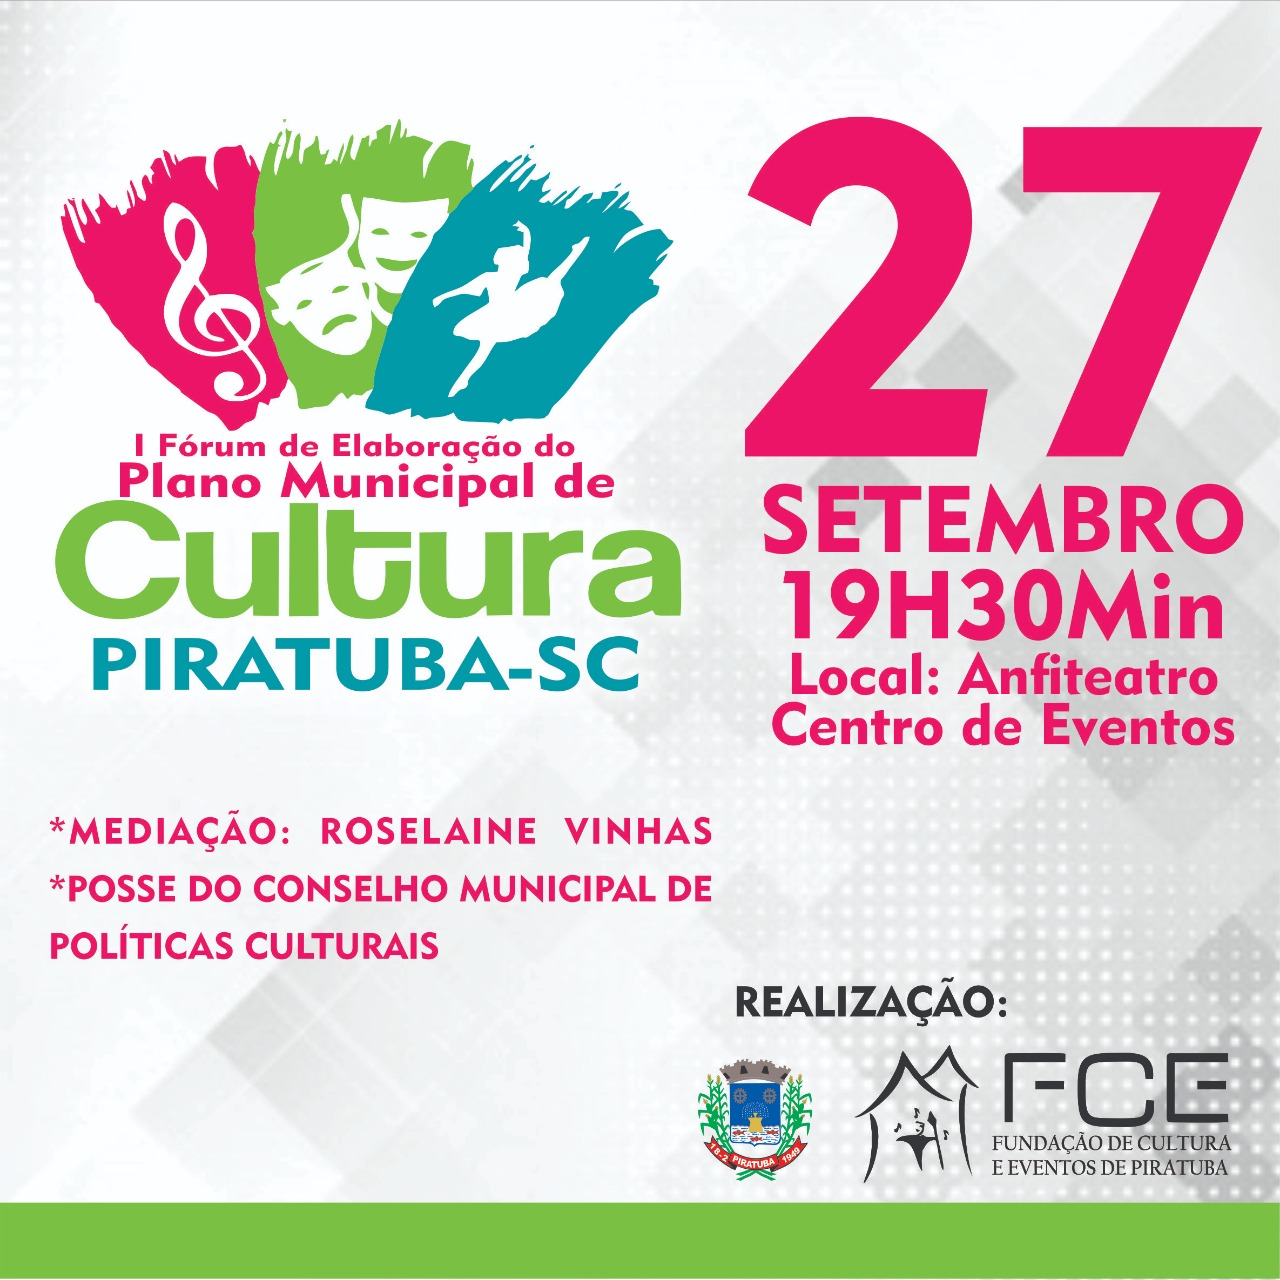 You are currently viewing Elaboração do Plano Municipal de Cultura de Piratuba